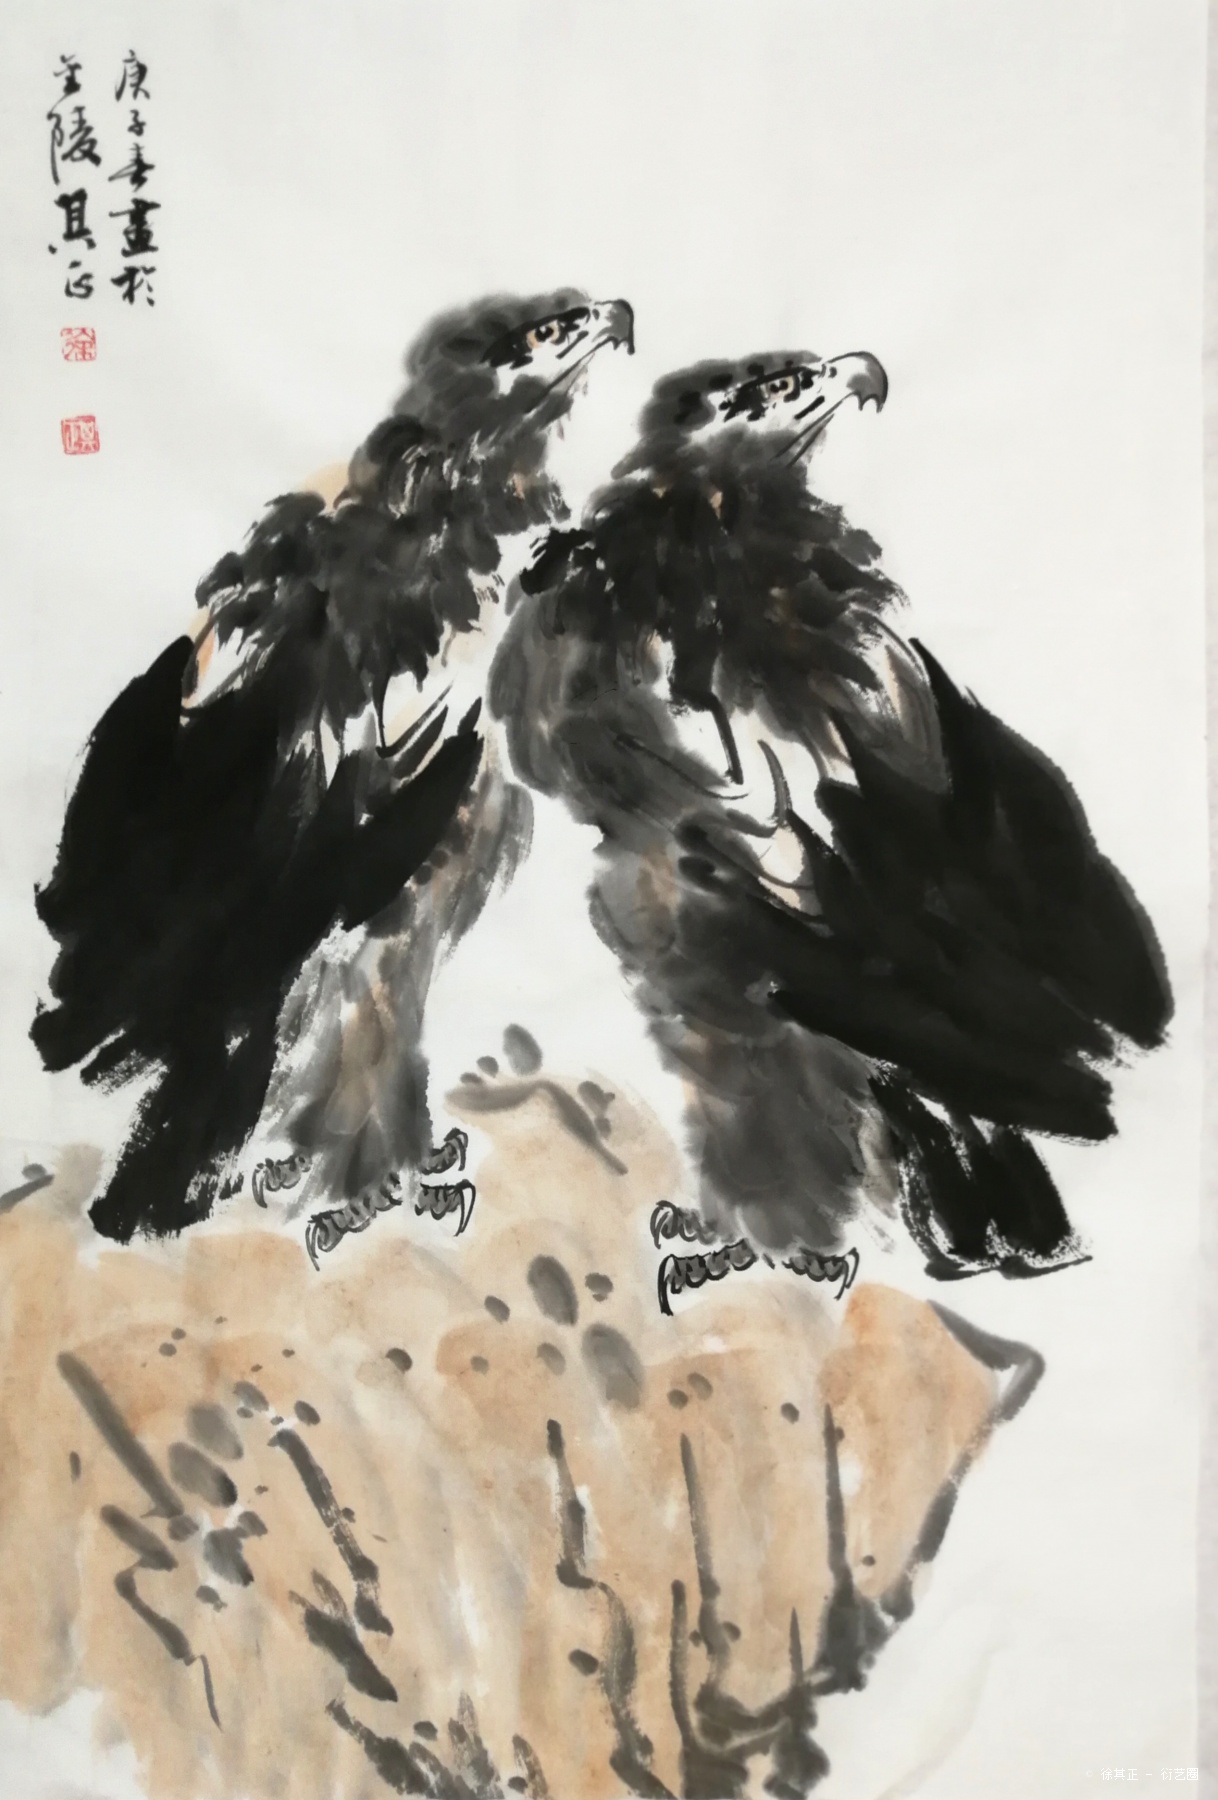 鹰,徐其正, 2020年纸张水墨 